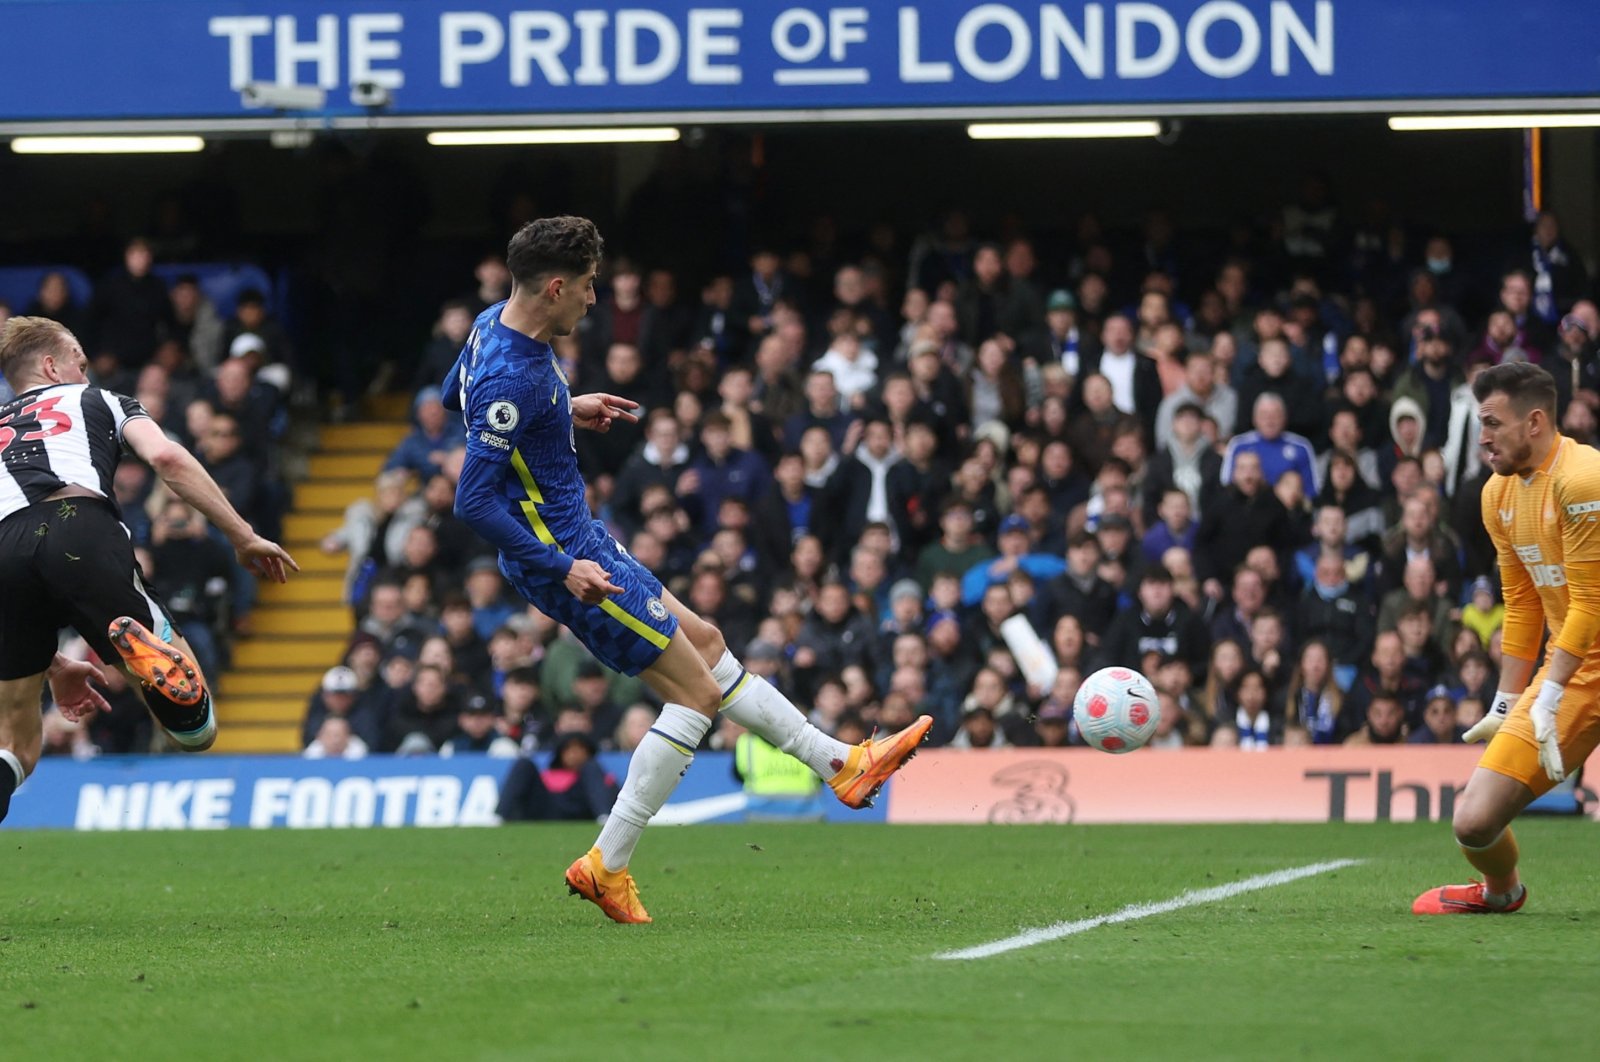 Chelsea&#039;s Kai Havertz scores in a Premier League match against Newcastle, London, England, March 13, 2022. (Reuters Photo)